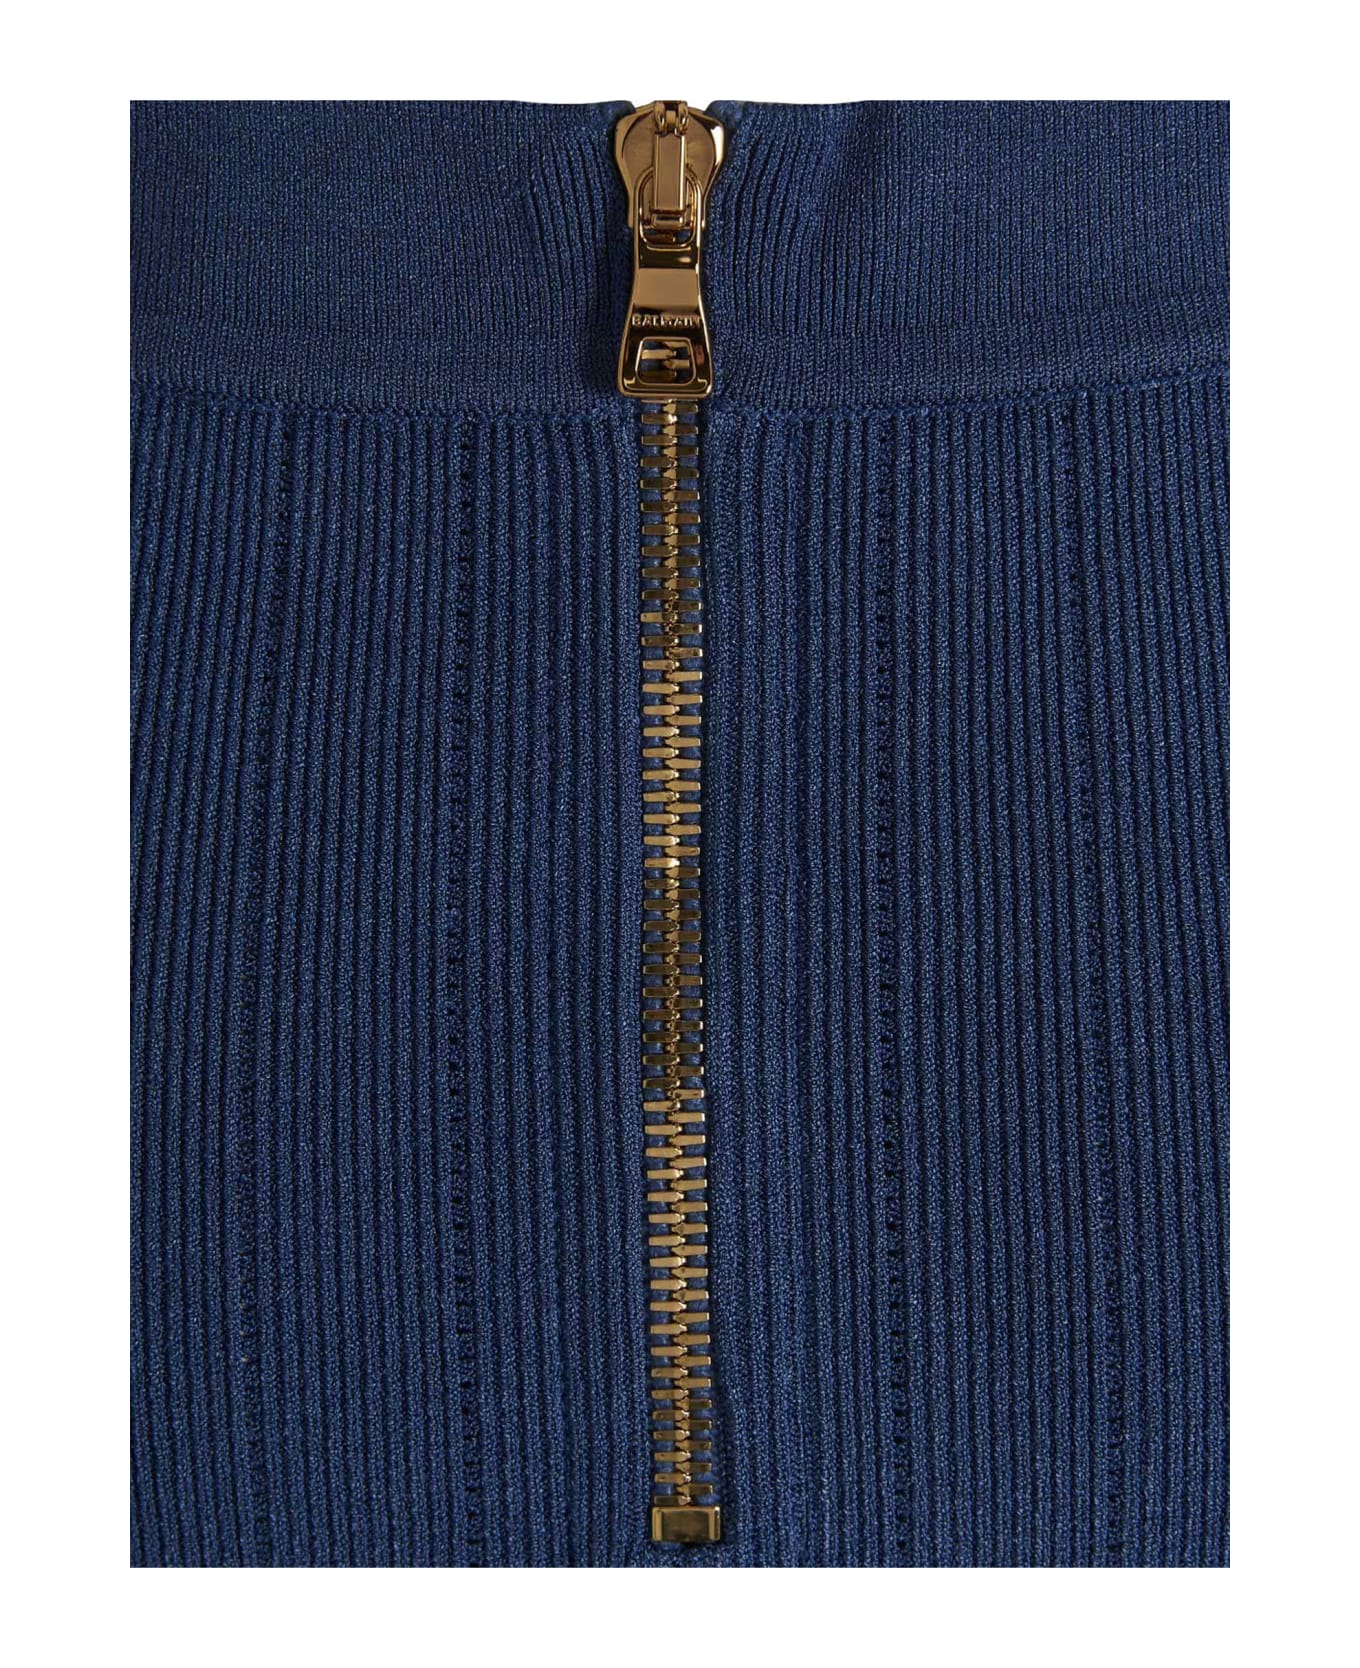 Balmain Logo Button Knit Skirt - Blue